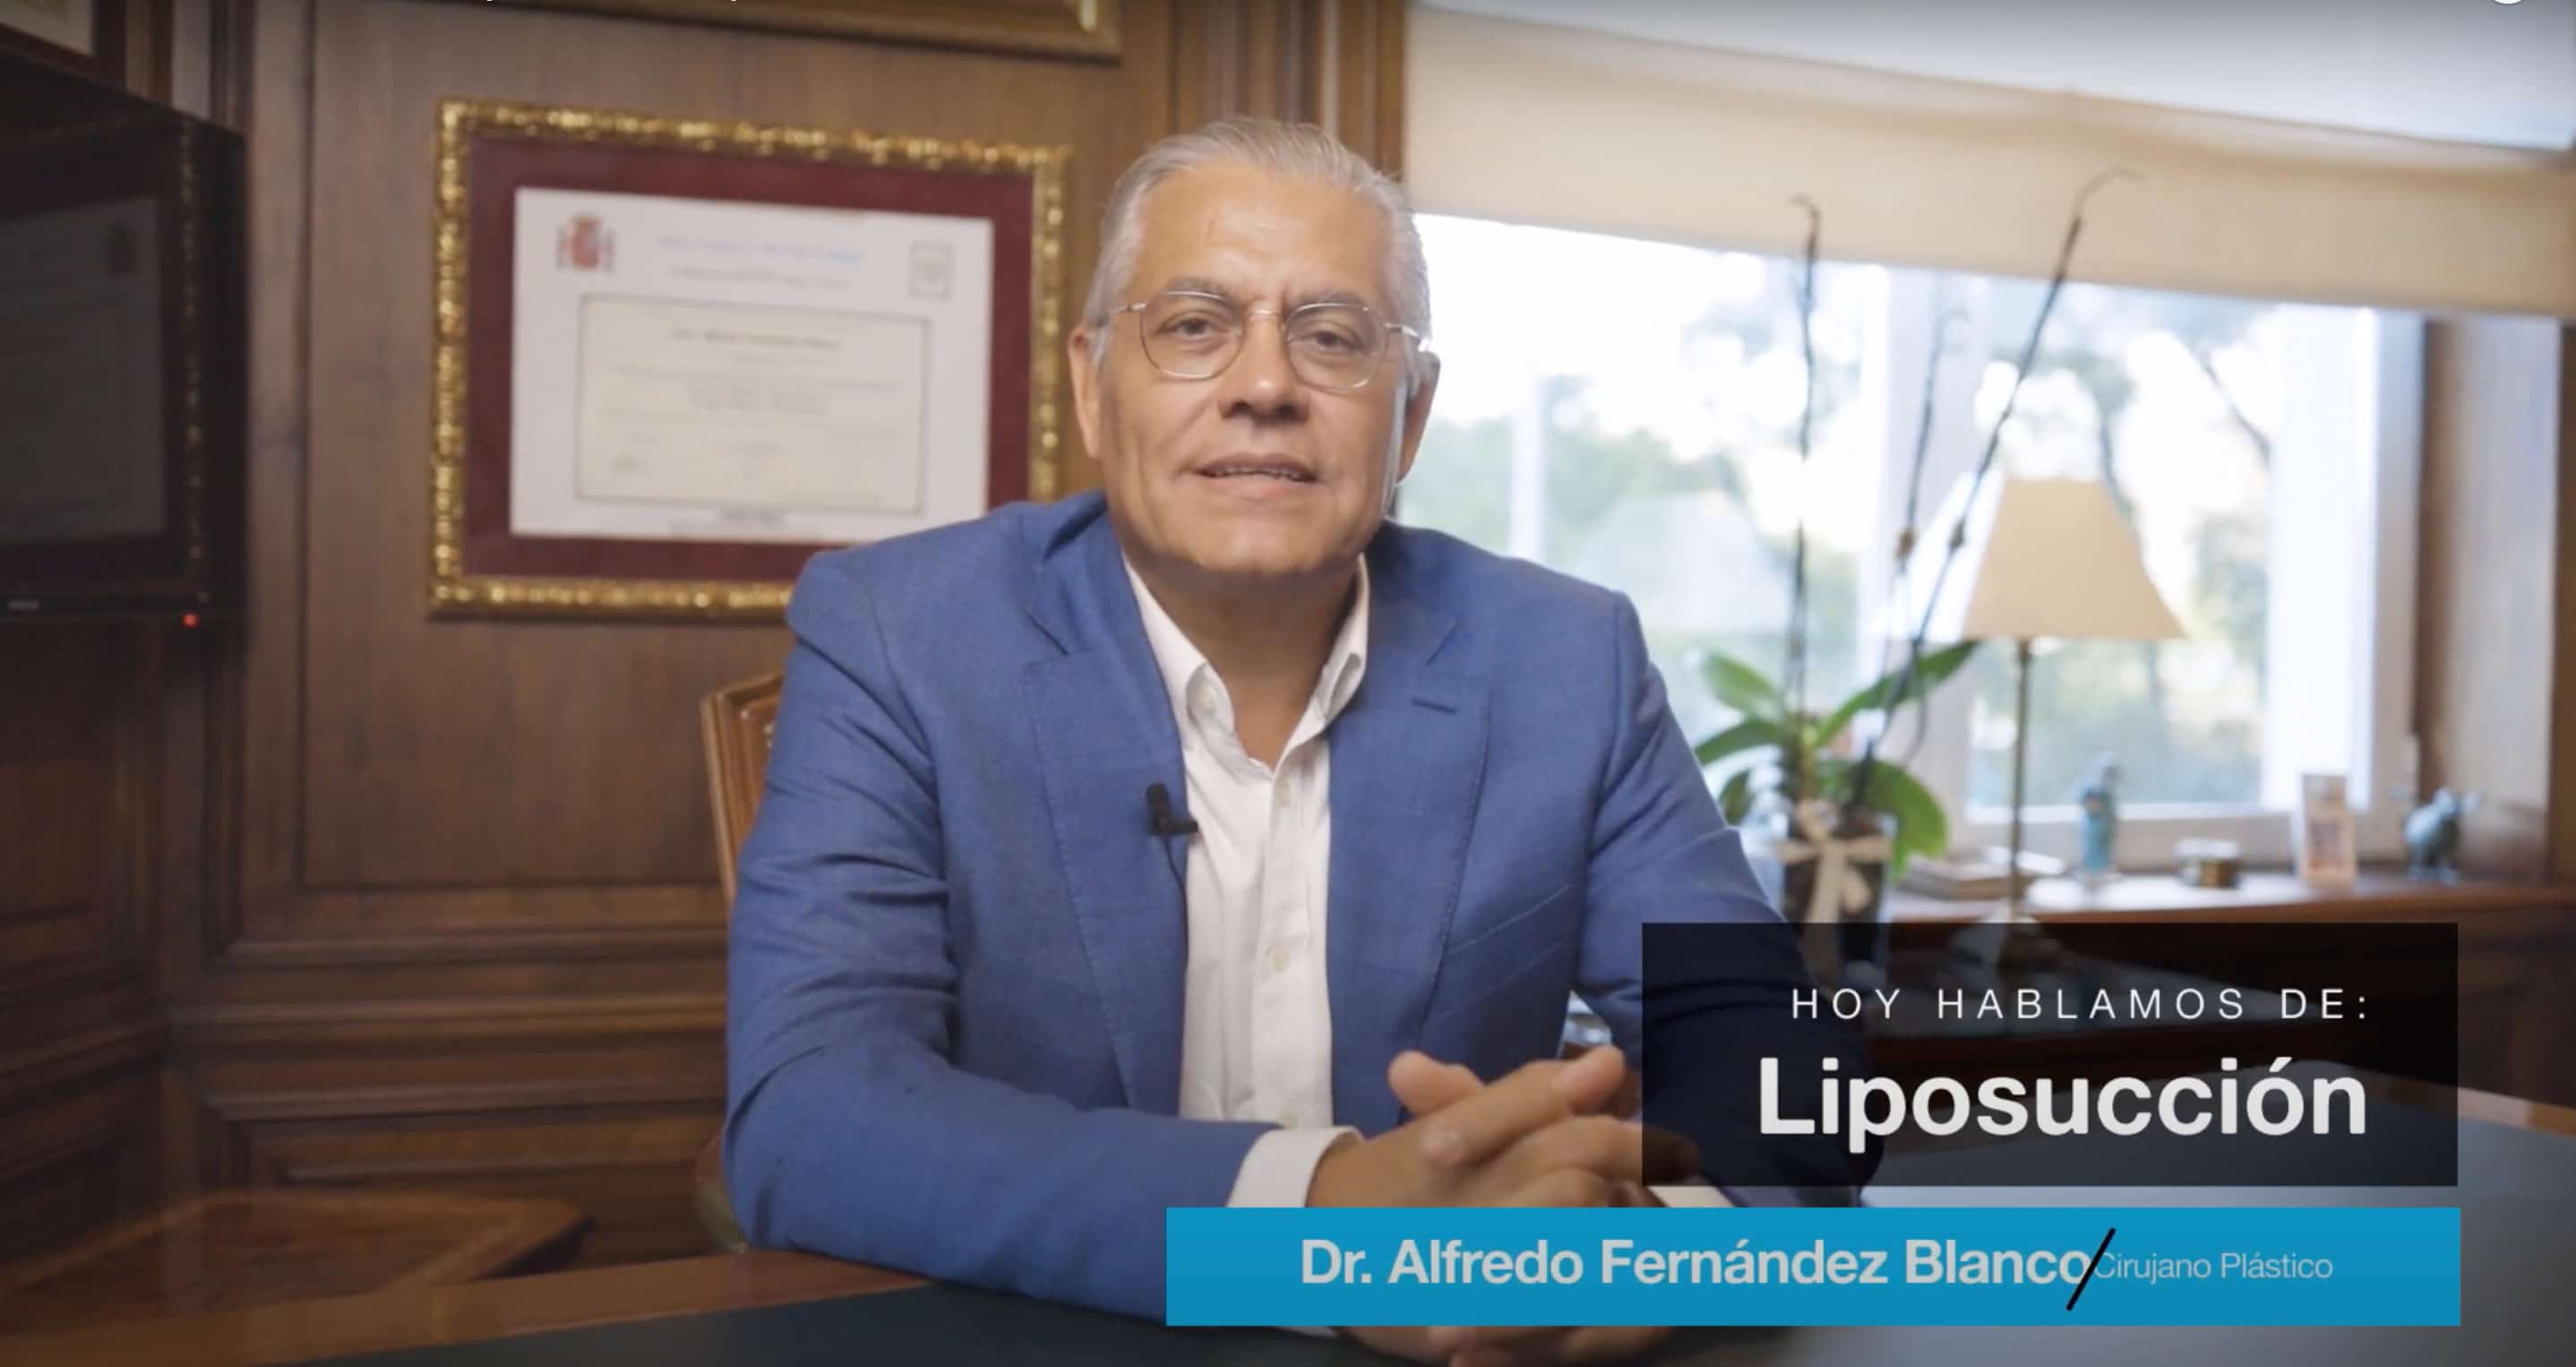 Videoblog del doctor Alfredo Fernández Blanco acerca de la liposucción